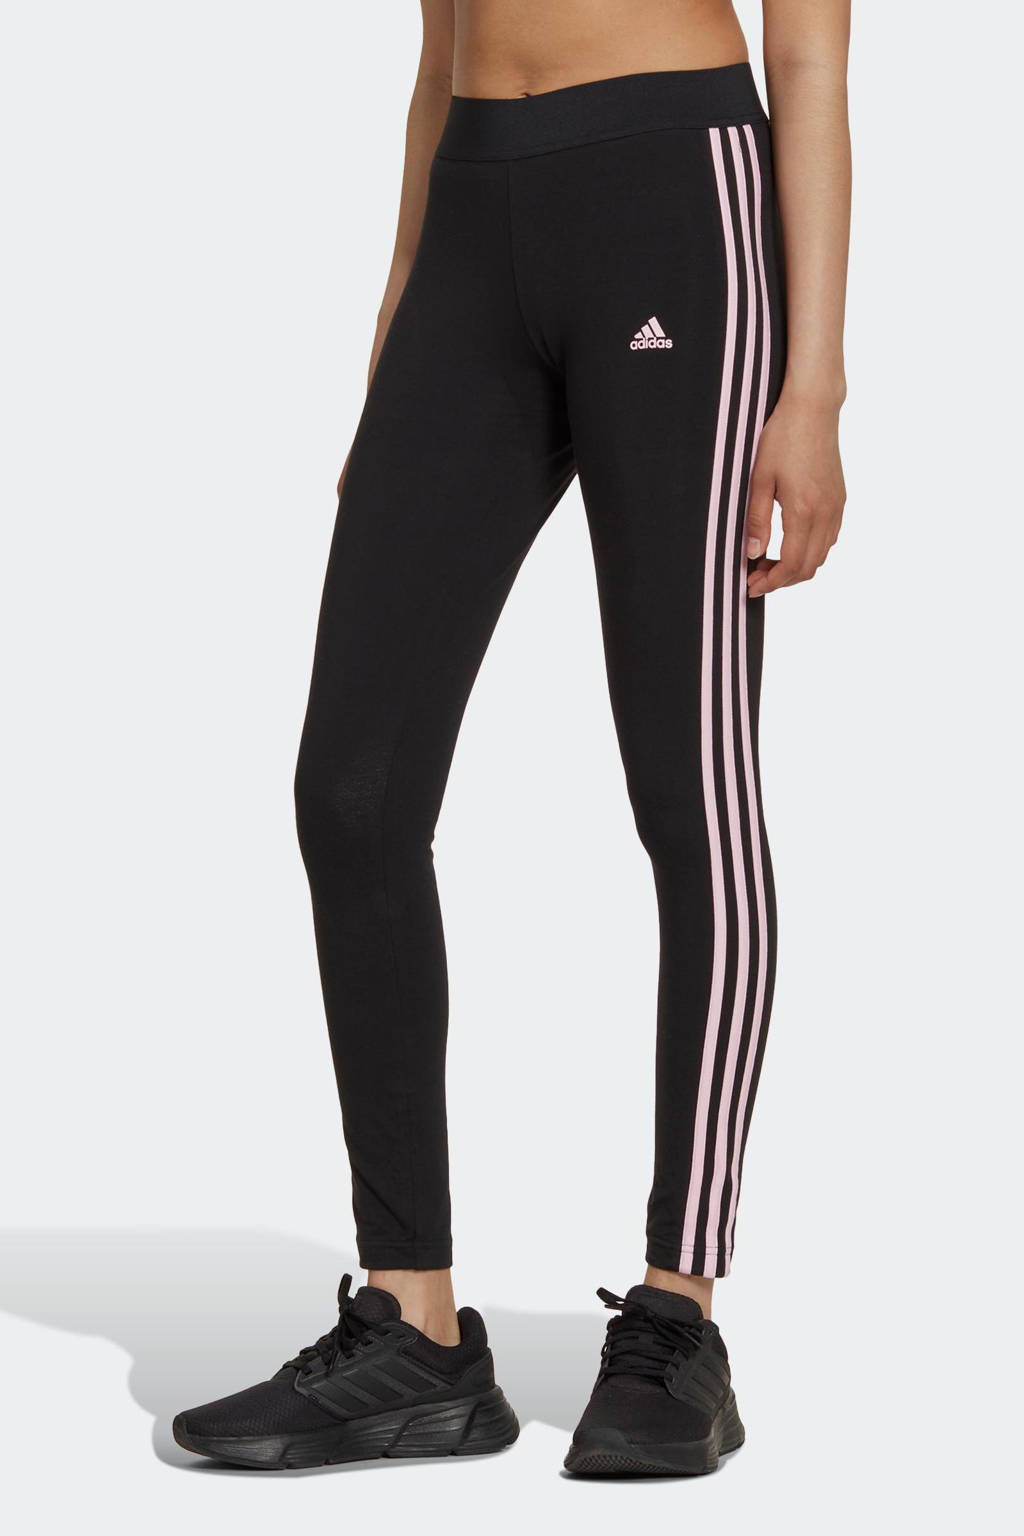 ze Kwelling roltrap adidas Sportswear legging zwart/roze | wehkamp